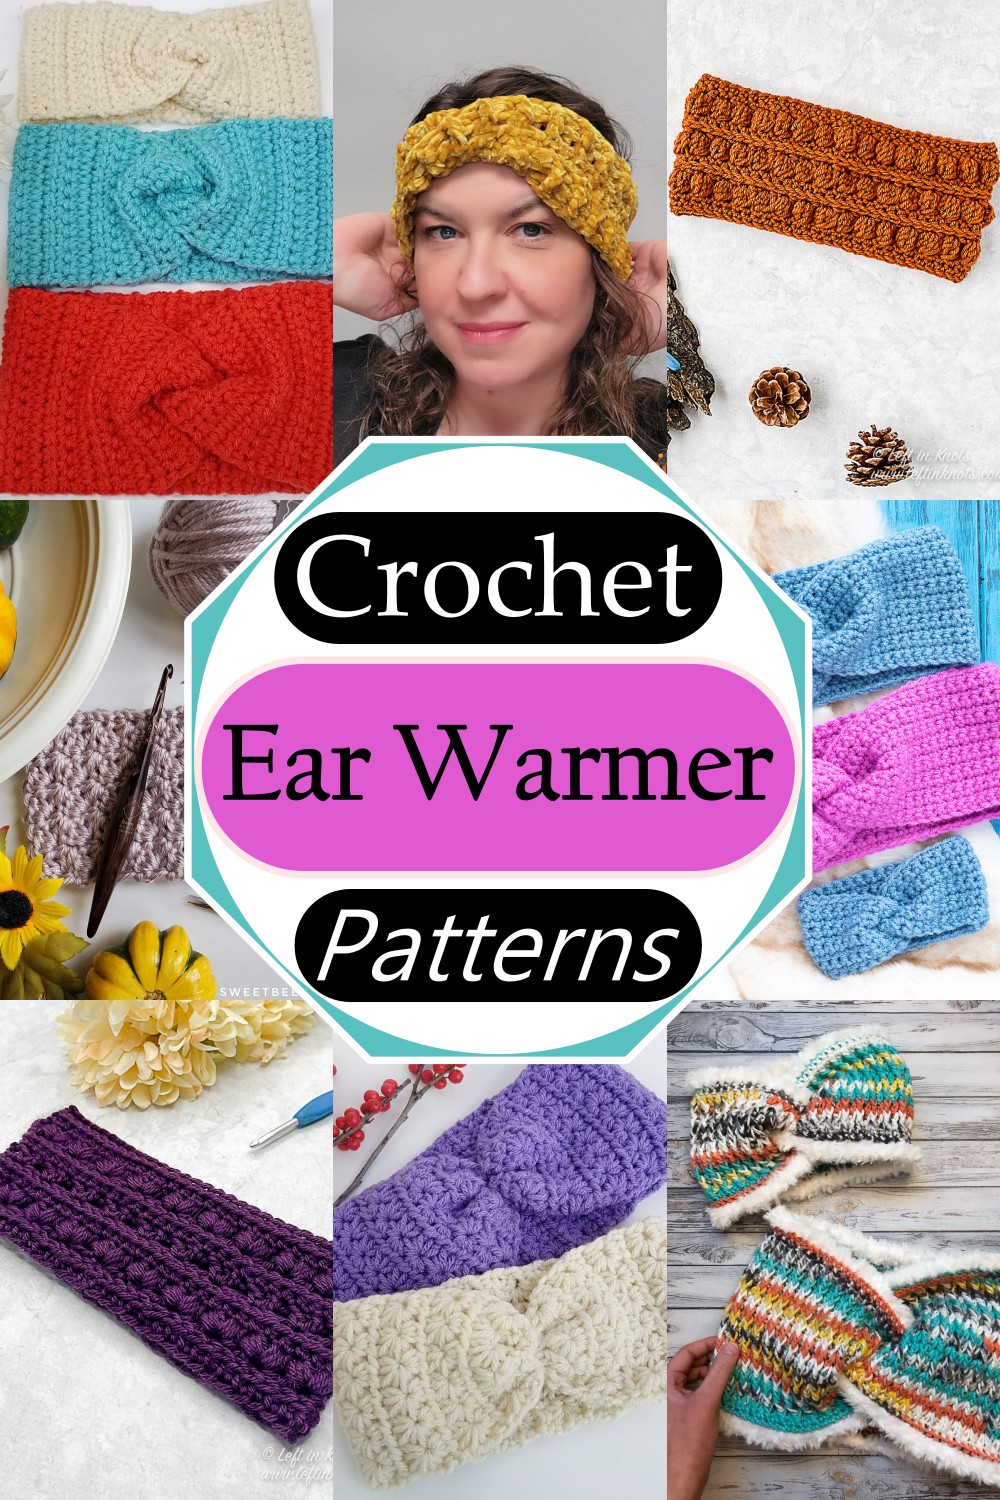 Free Crochet Ear Warmer Patterns